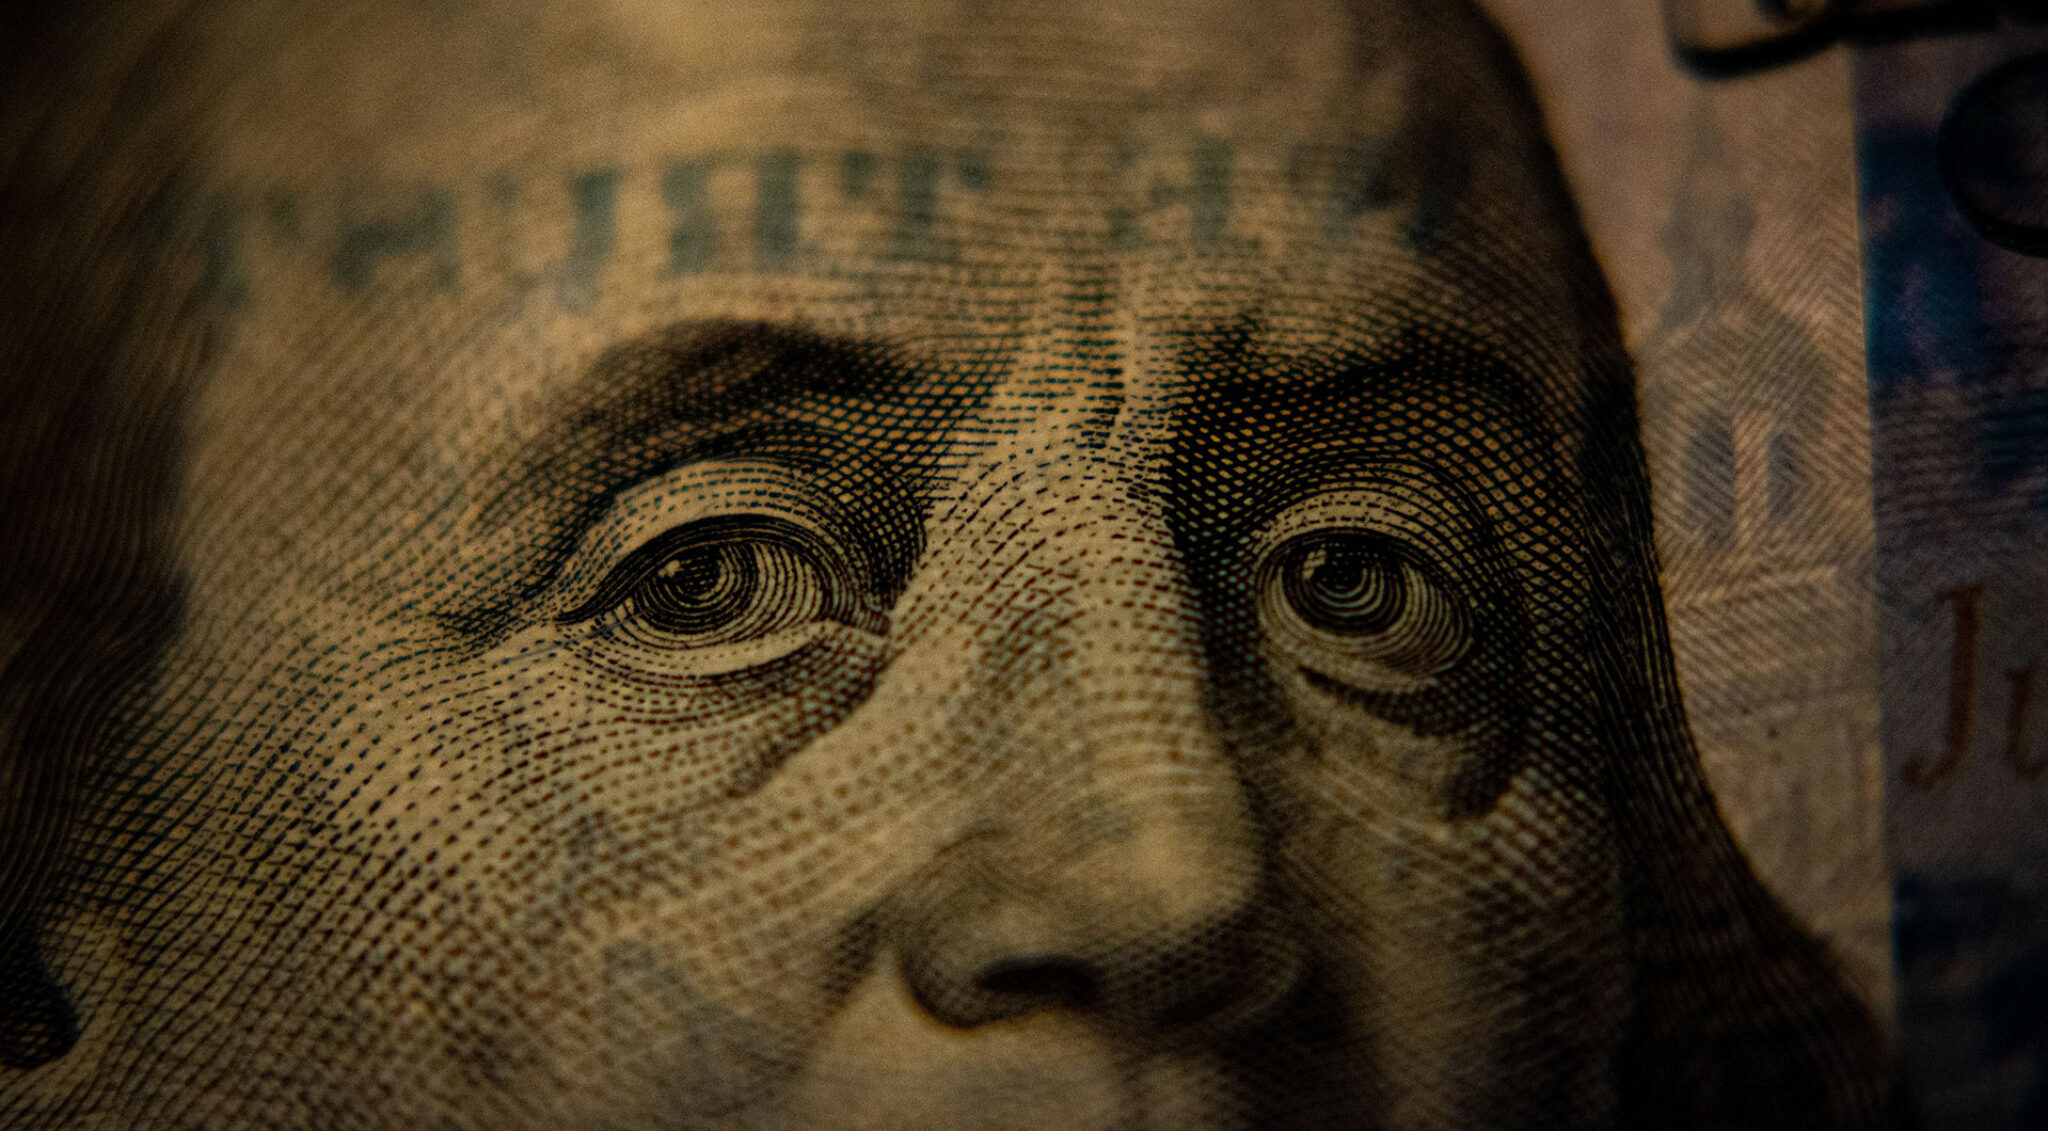 Ausschnitt von Benjamin Franklin auf der Dollar Note